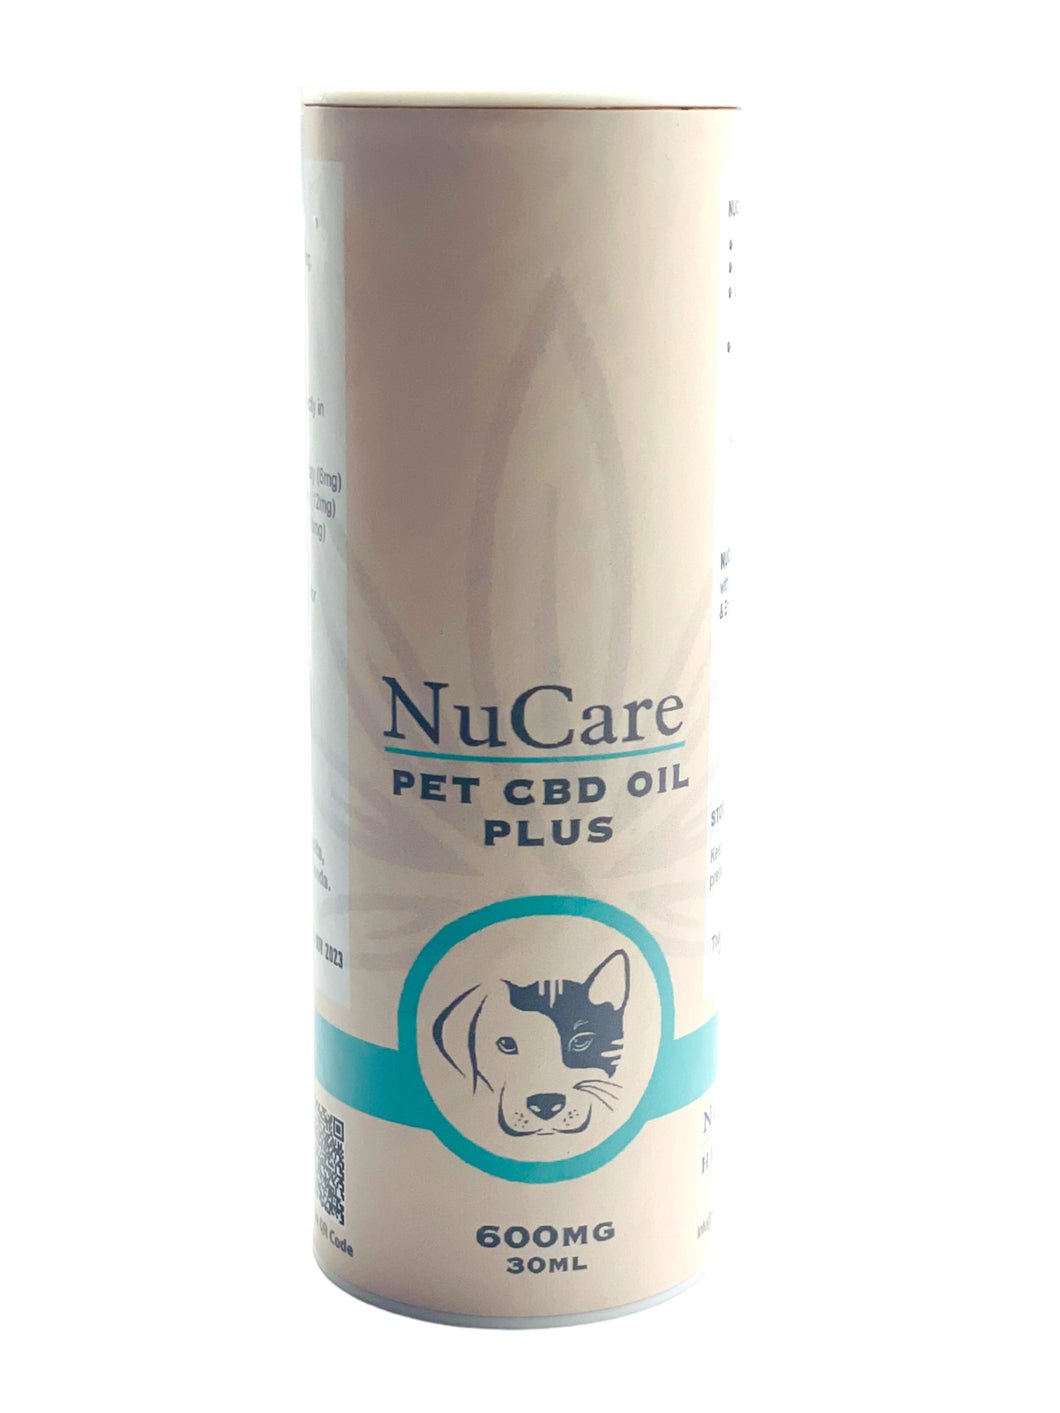 NuCare Pet CBD Oil PLUS 600mg - 30ml